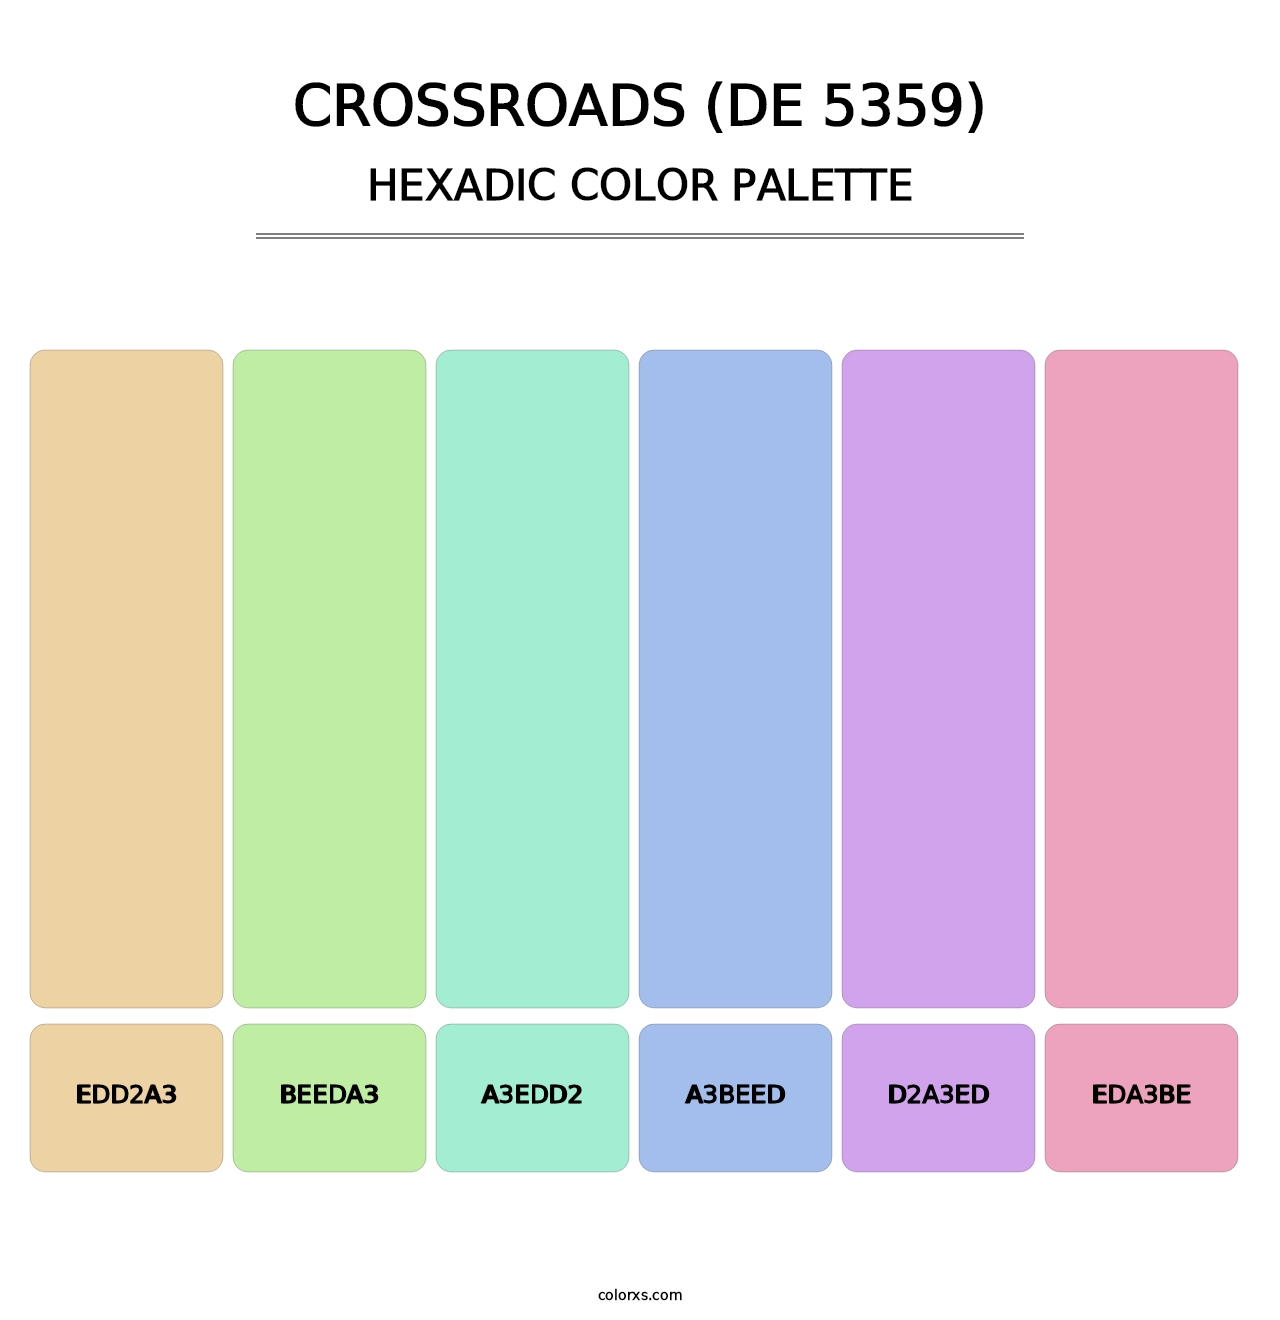 Crossroads (DE 5359) - Hexadic Color Palette